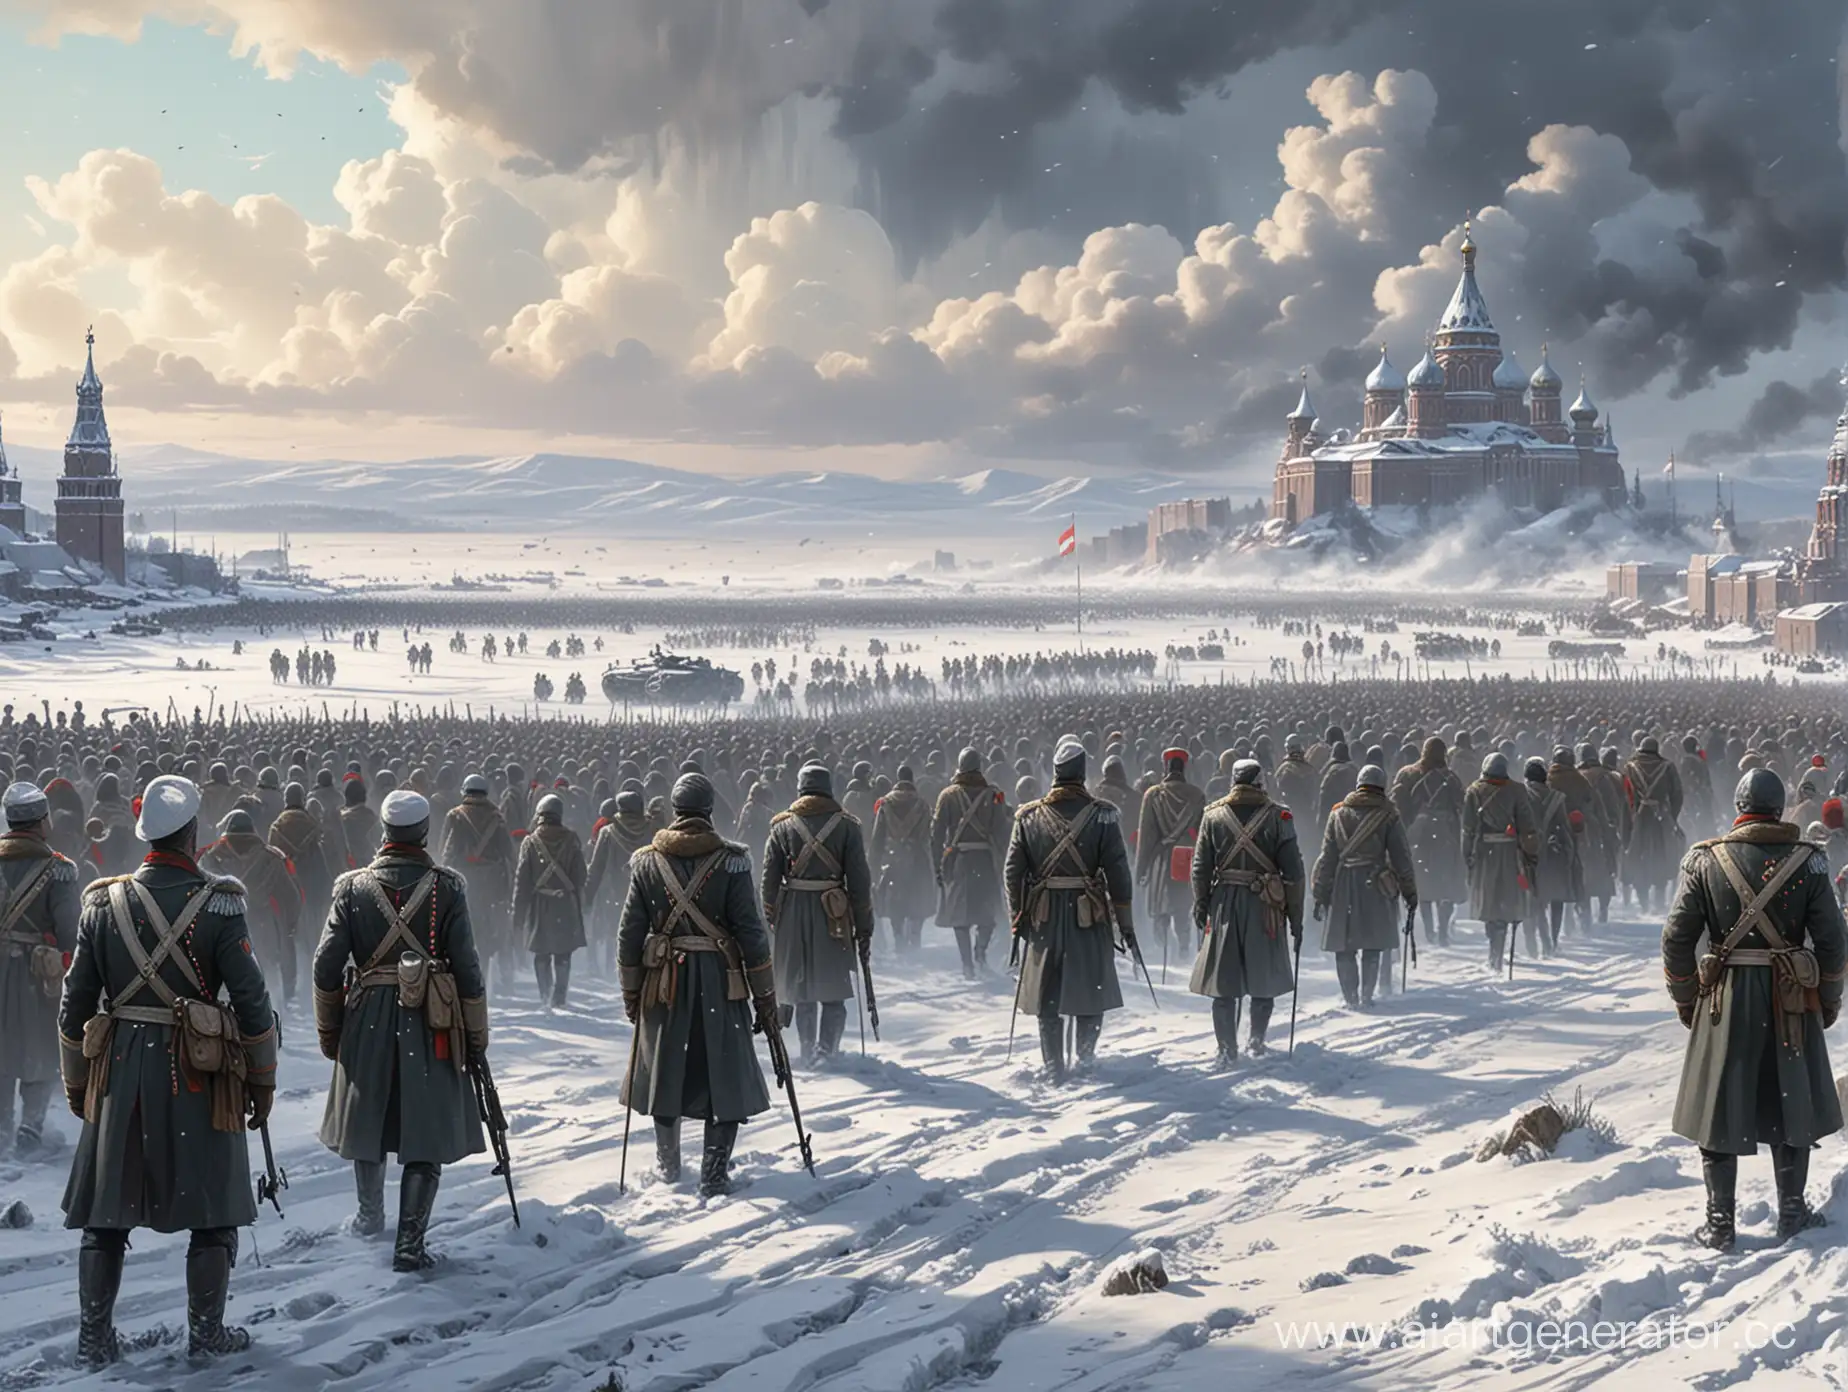 нарисуй Российскую империю в будующем на поле боя против другой страны, на картинеке изображен снег и толпы людей в военной форме